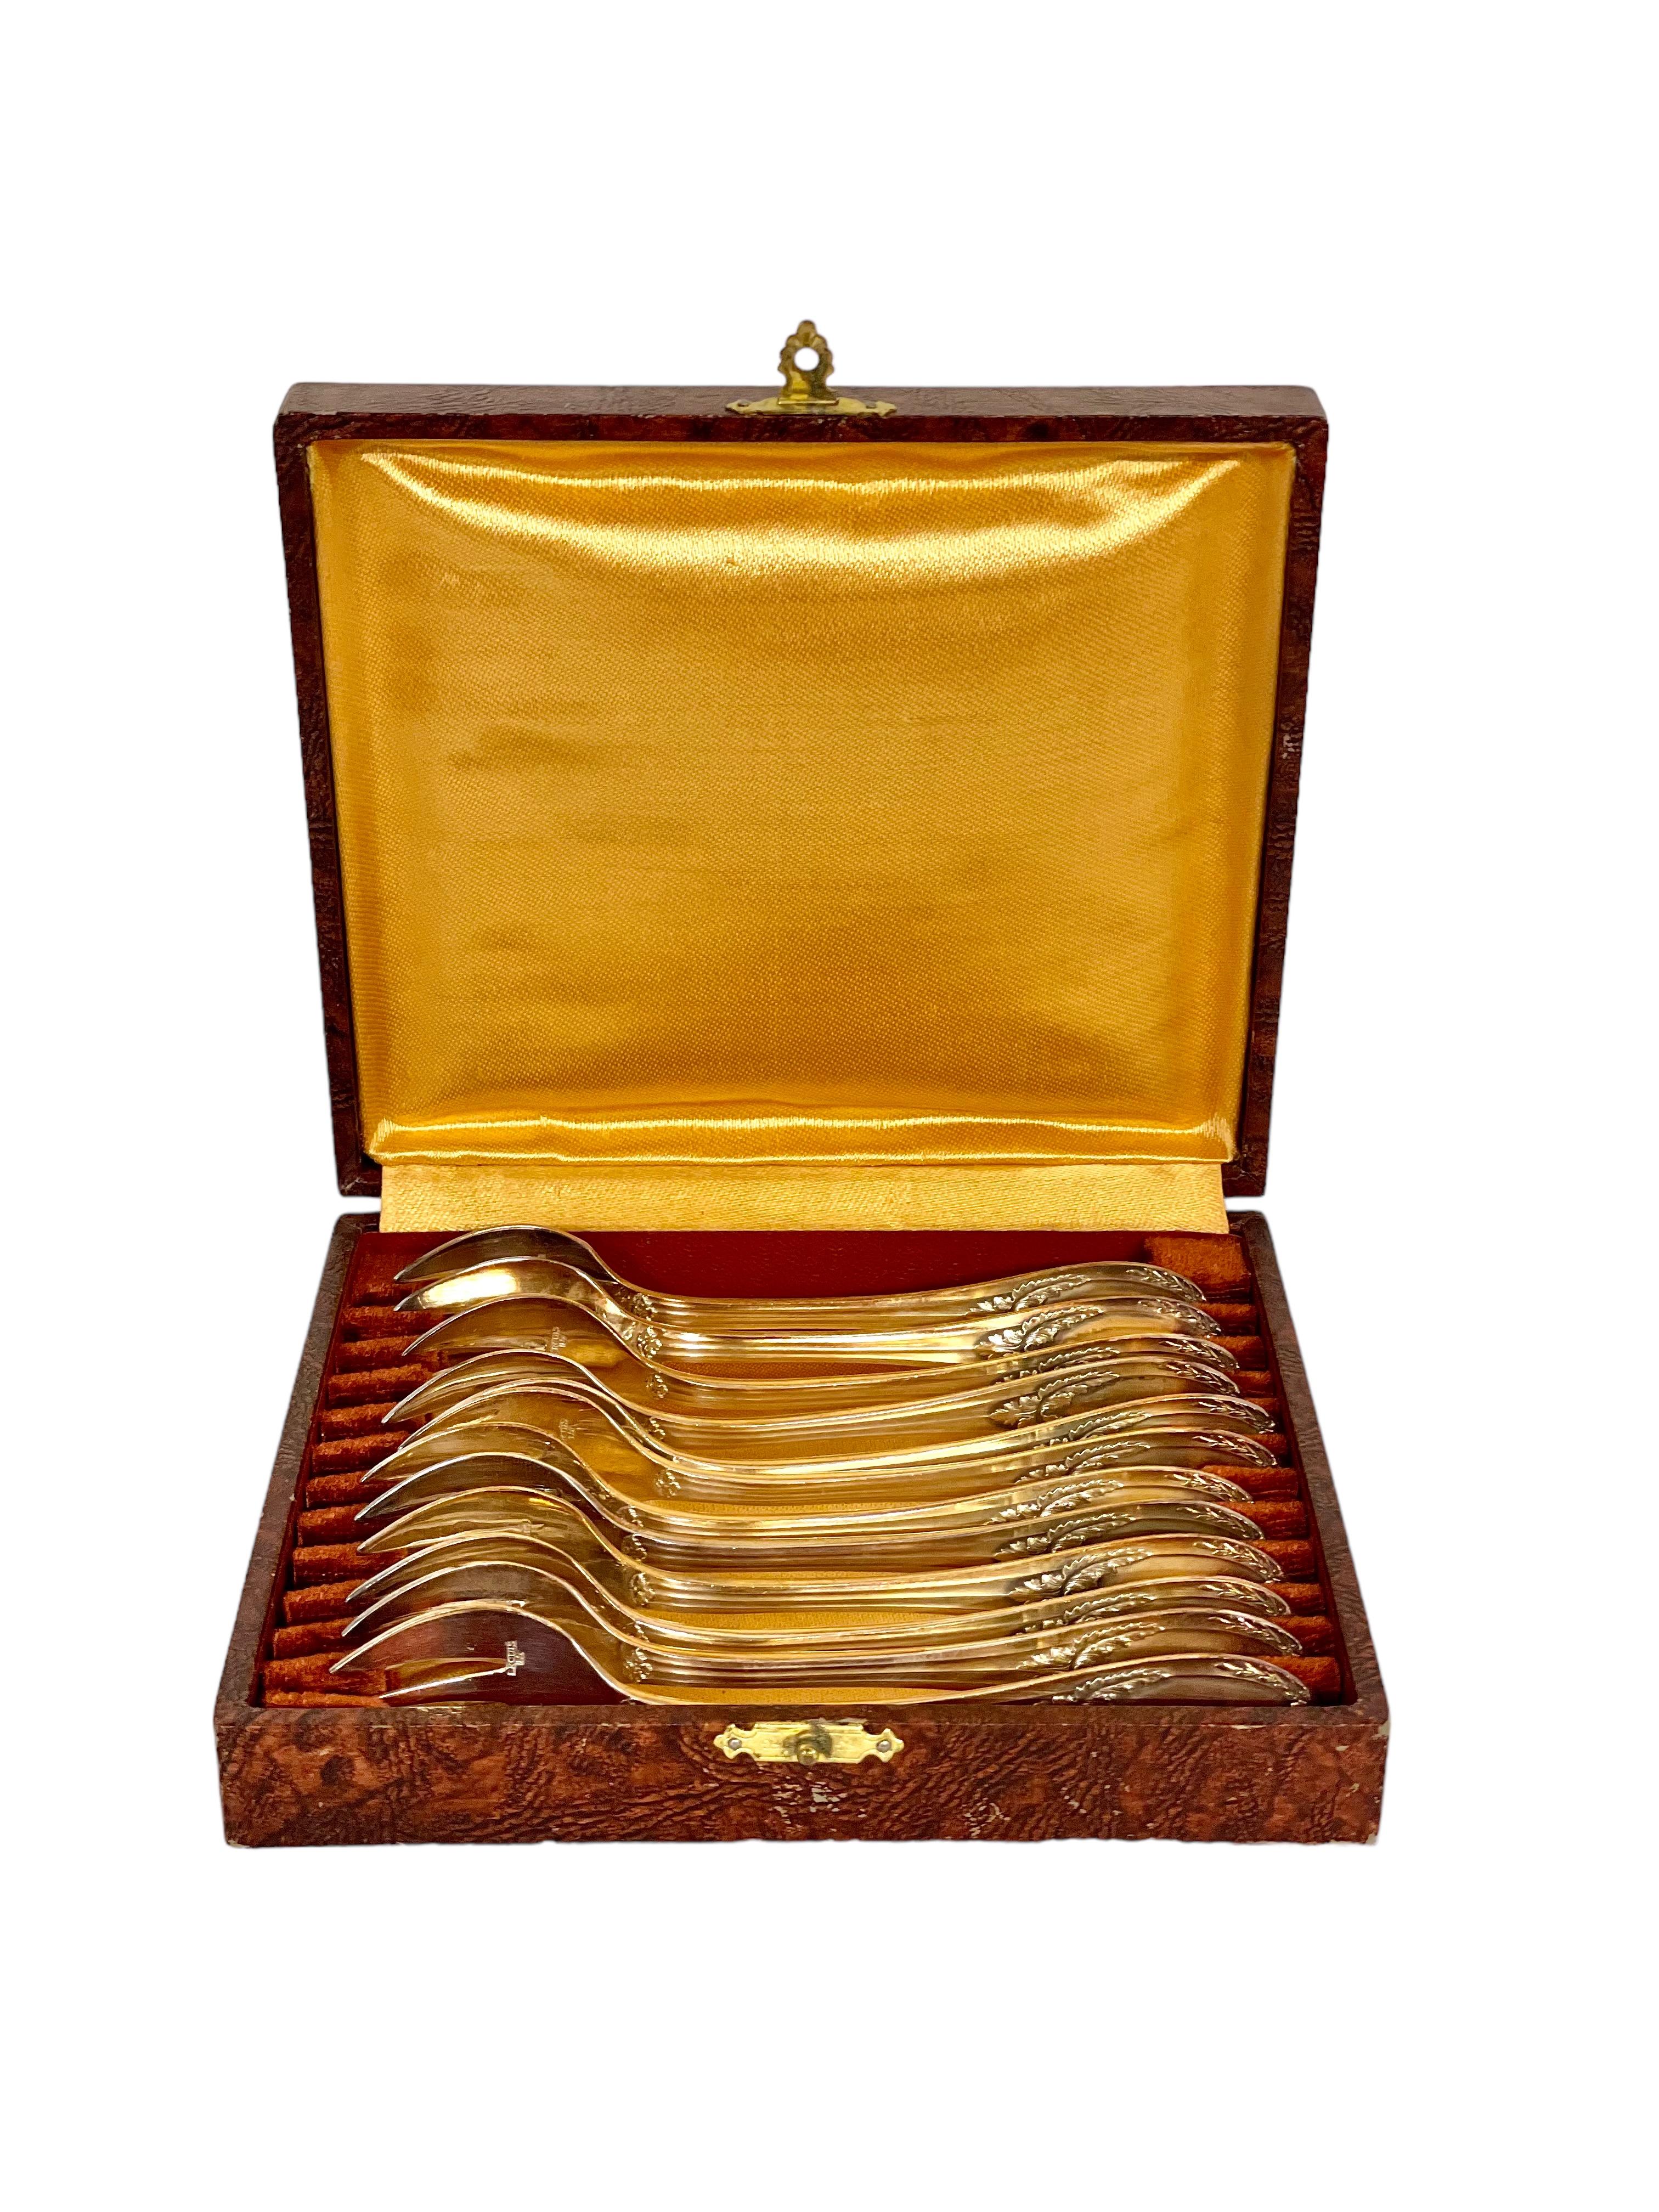 Ein entzückendes Set von 12 zusammenpassenden versilberten Austerngabeln der renommierten französischen Silberschmiede Ercuis (gegründet 1867), die in ihrem Originaletui präsentiert werden. Die im Louis XVI-Stil gefertigten Gabeln sind auf beiden